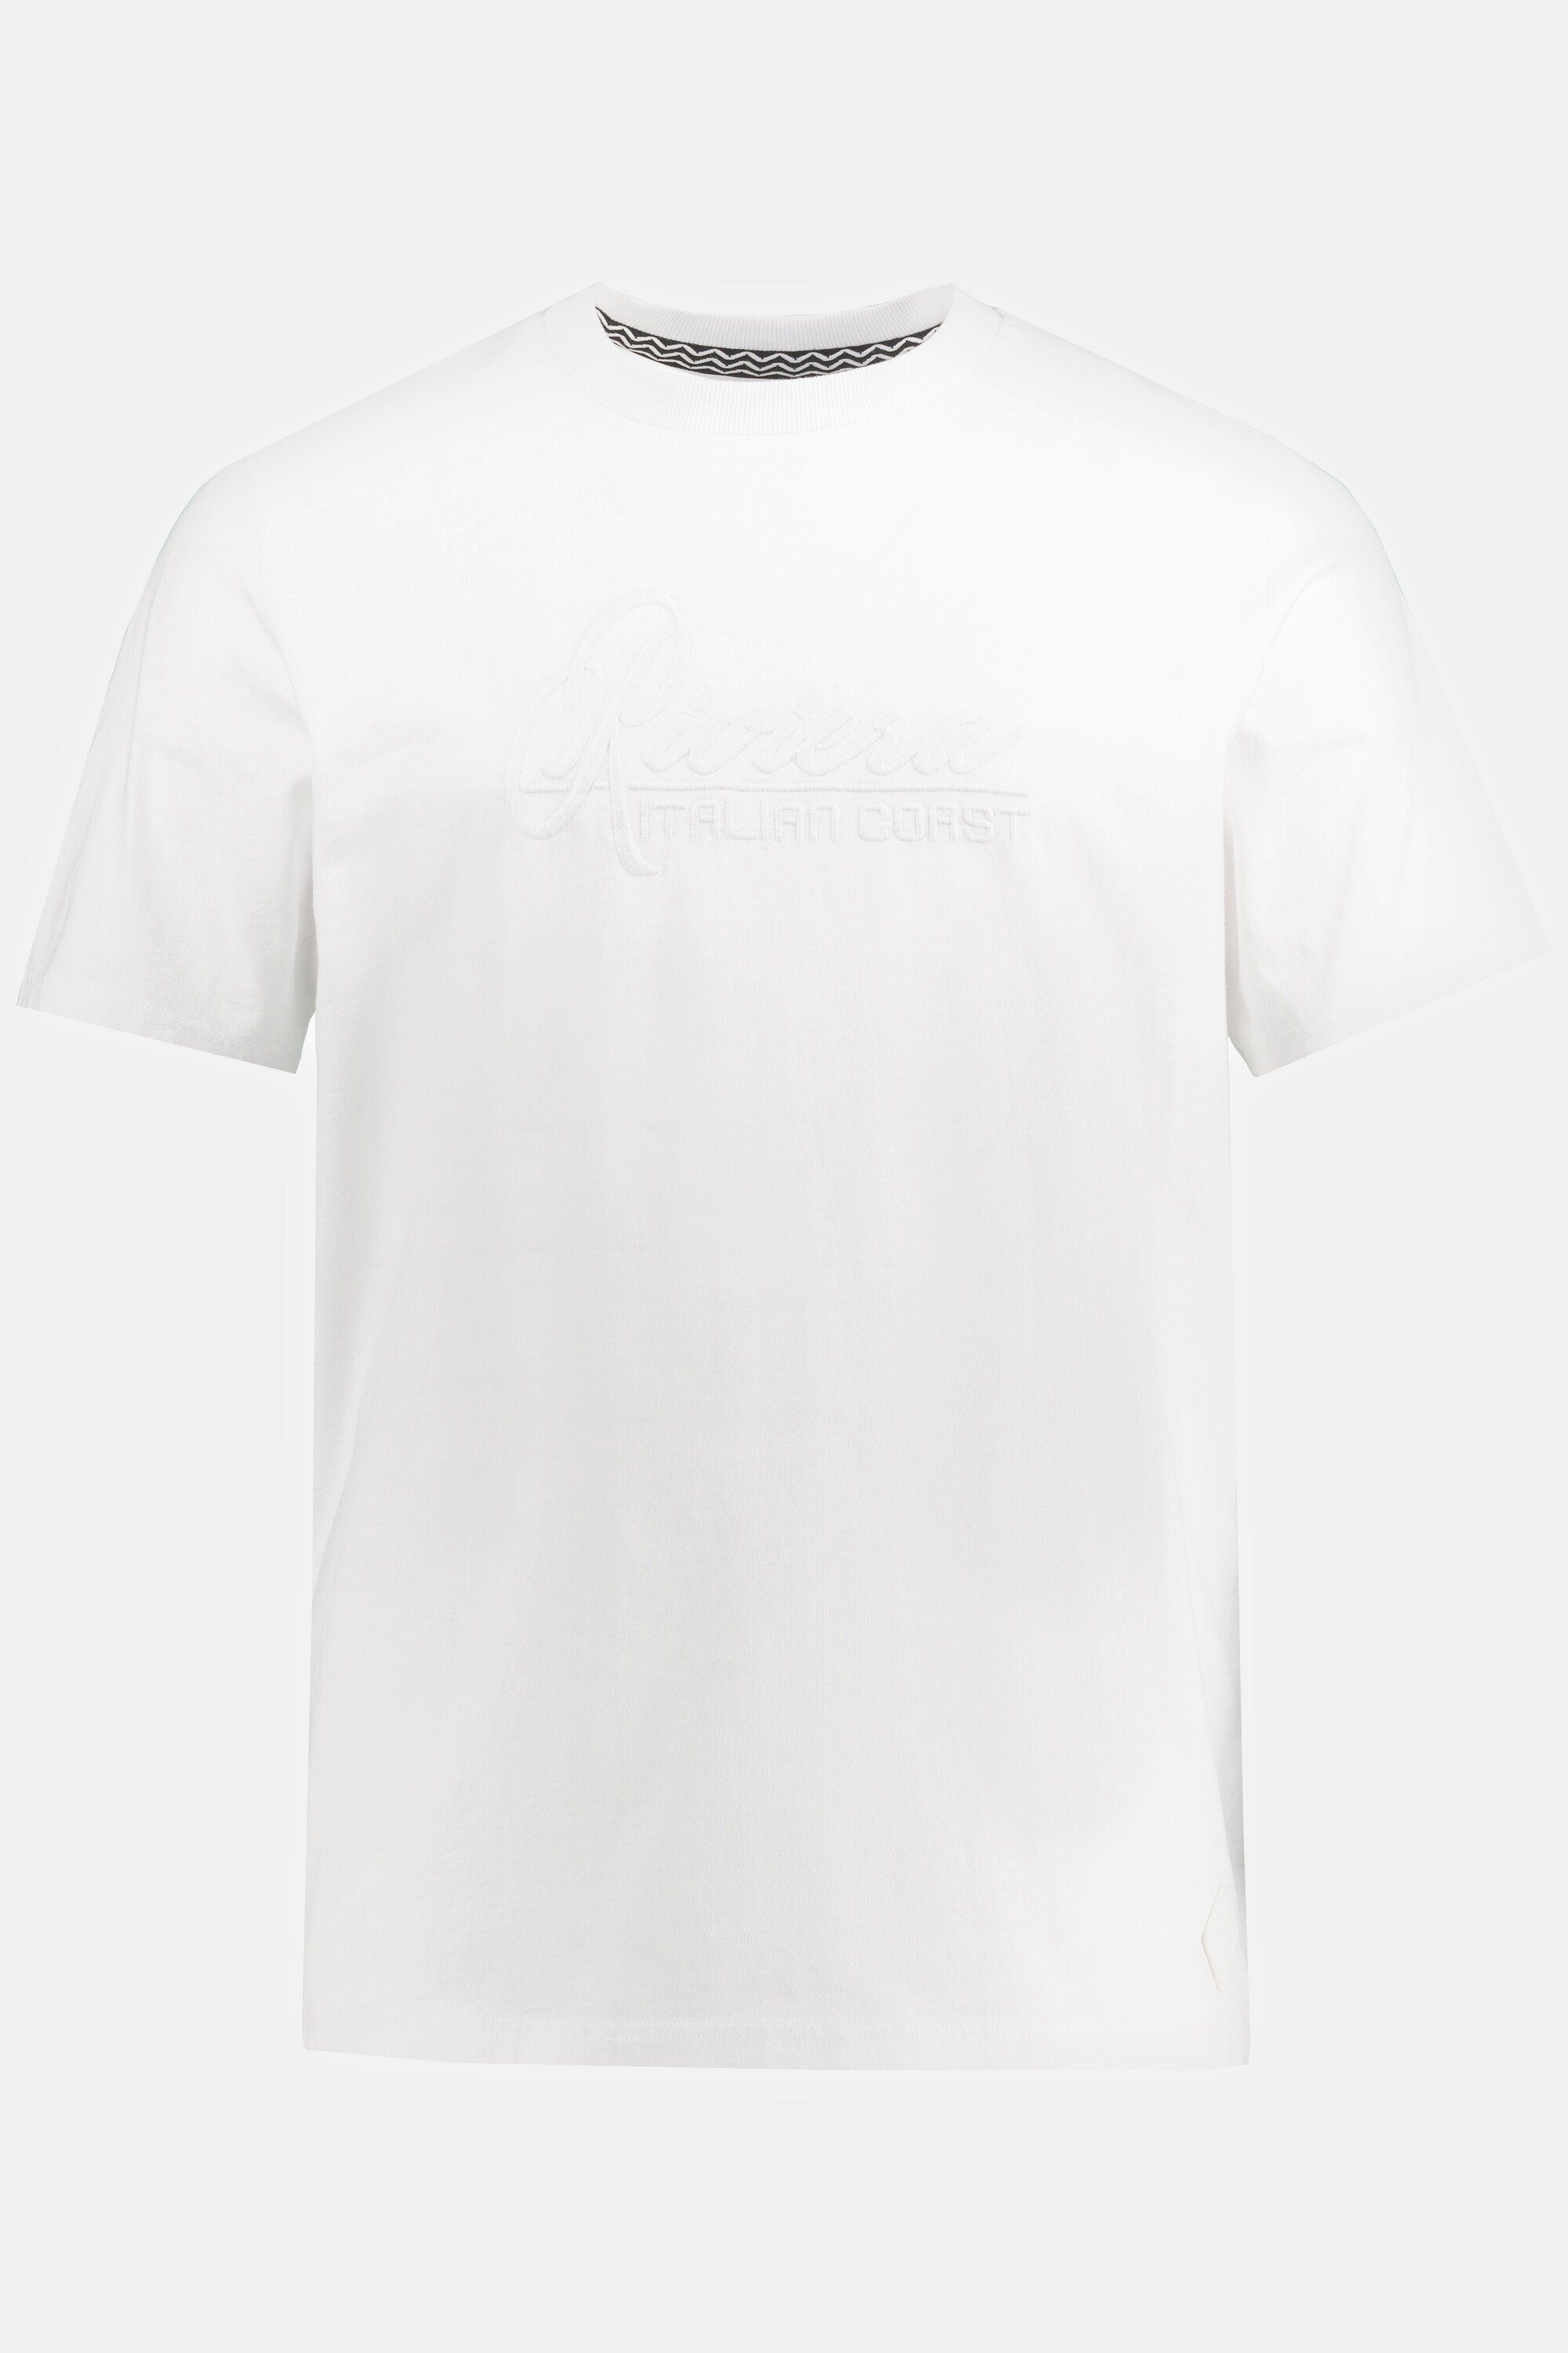 JP1880 T-Shirt T-Shirt Halbarm große Stickerei schneeweiß